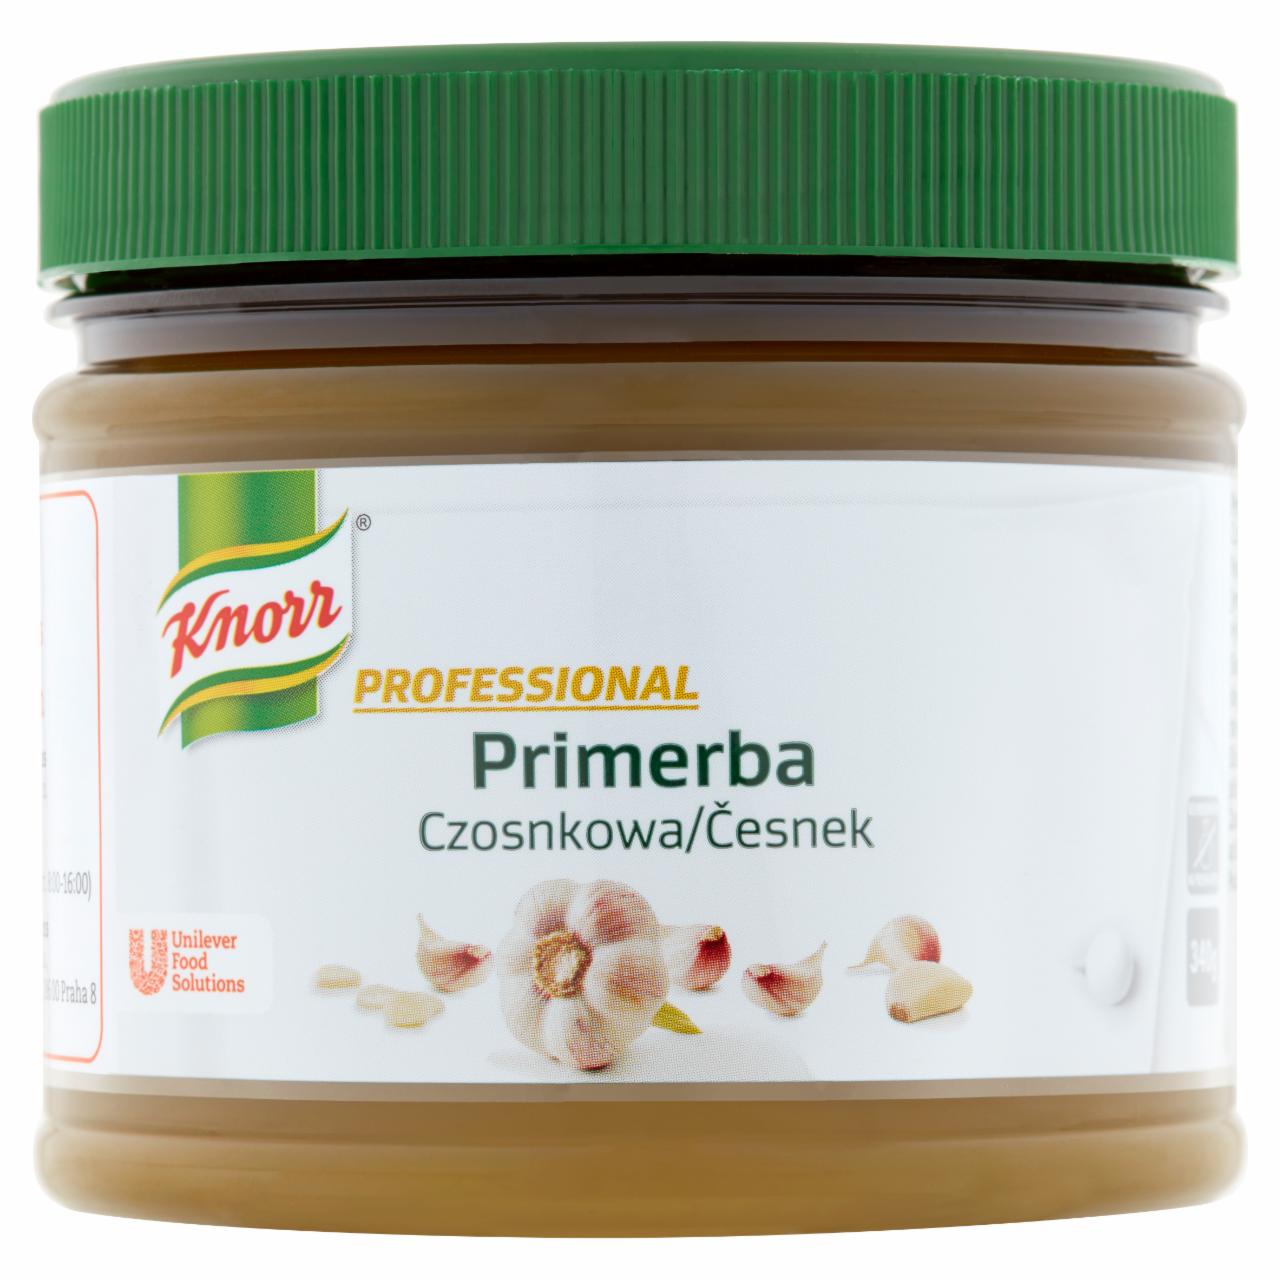 Zdjęcia - Knorr Professional Primerba czosnkowa Pasta czosnkowa do przyprawiania potraw 340 g